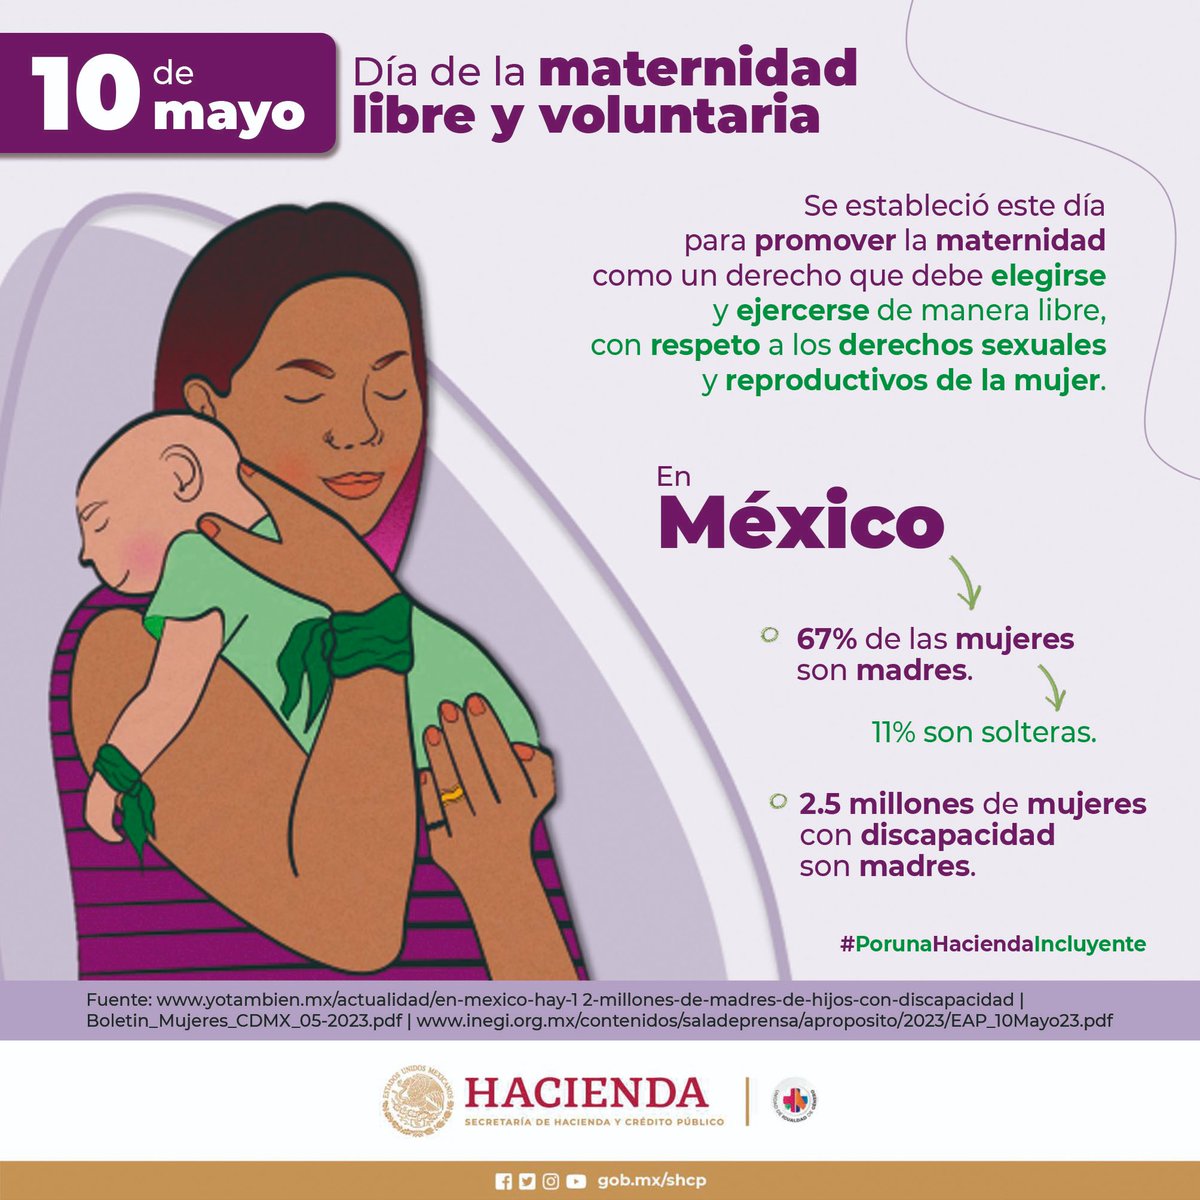 La maternidad es un derecho que debe elegirse y ejercerse de manera libre.
  
#EfemérideHacienda 🗓️
#PorUnaHaciendaIncluyente